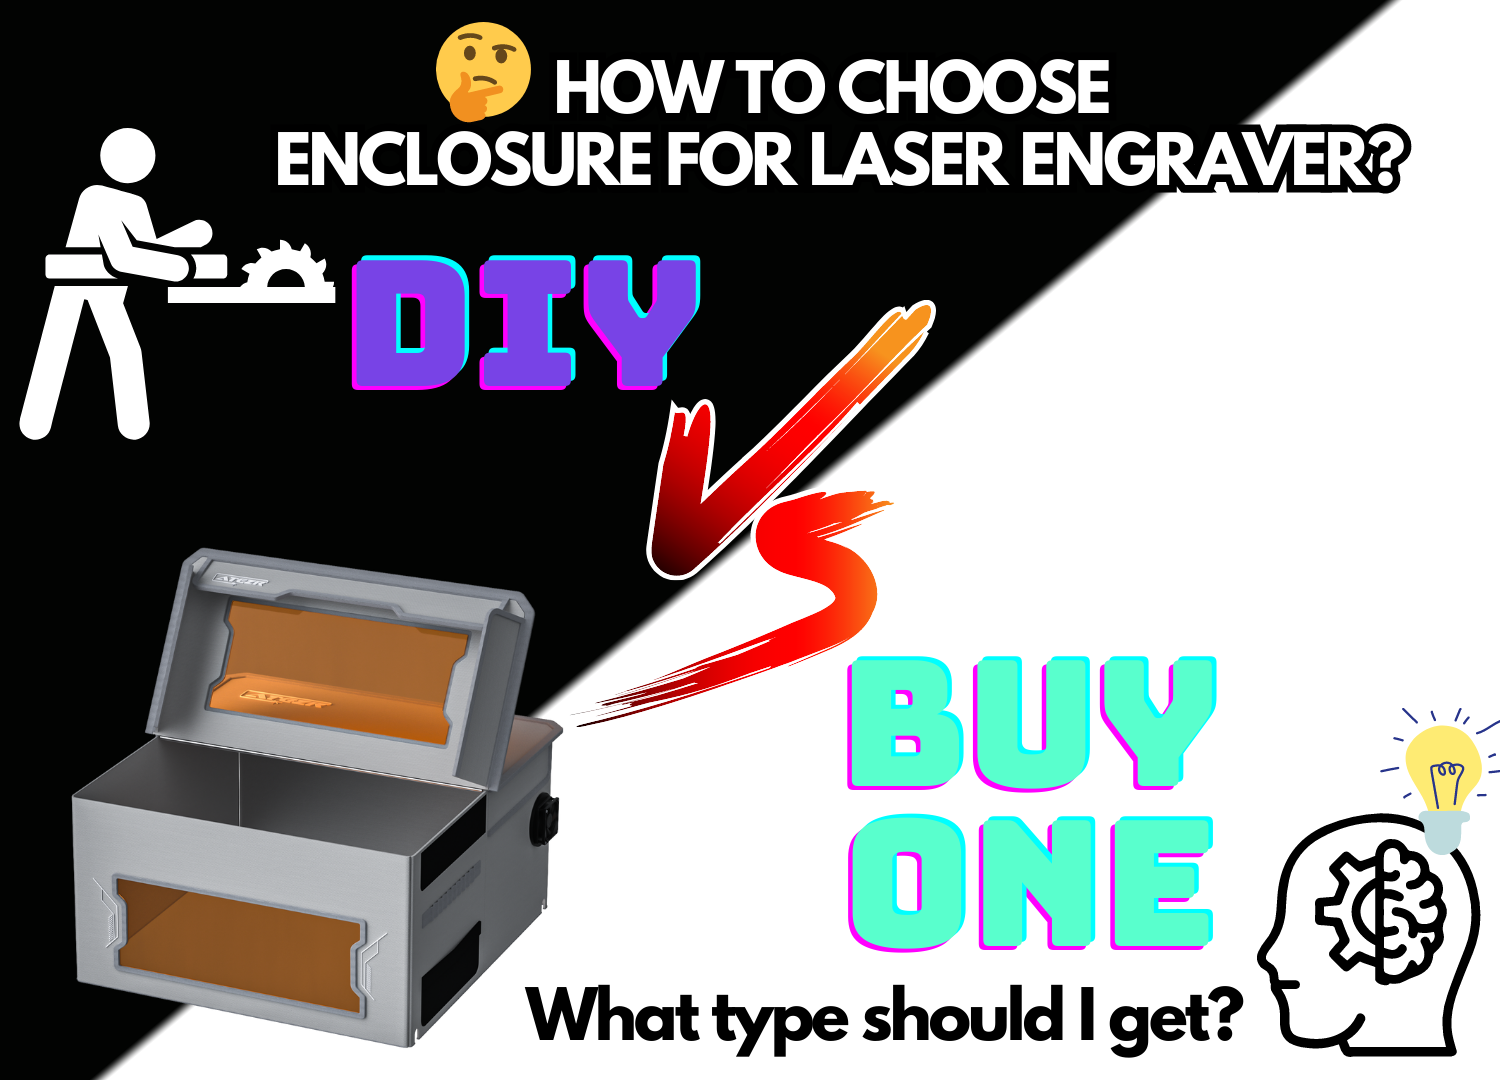 DIY Laser Enclosure 